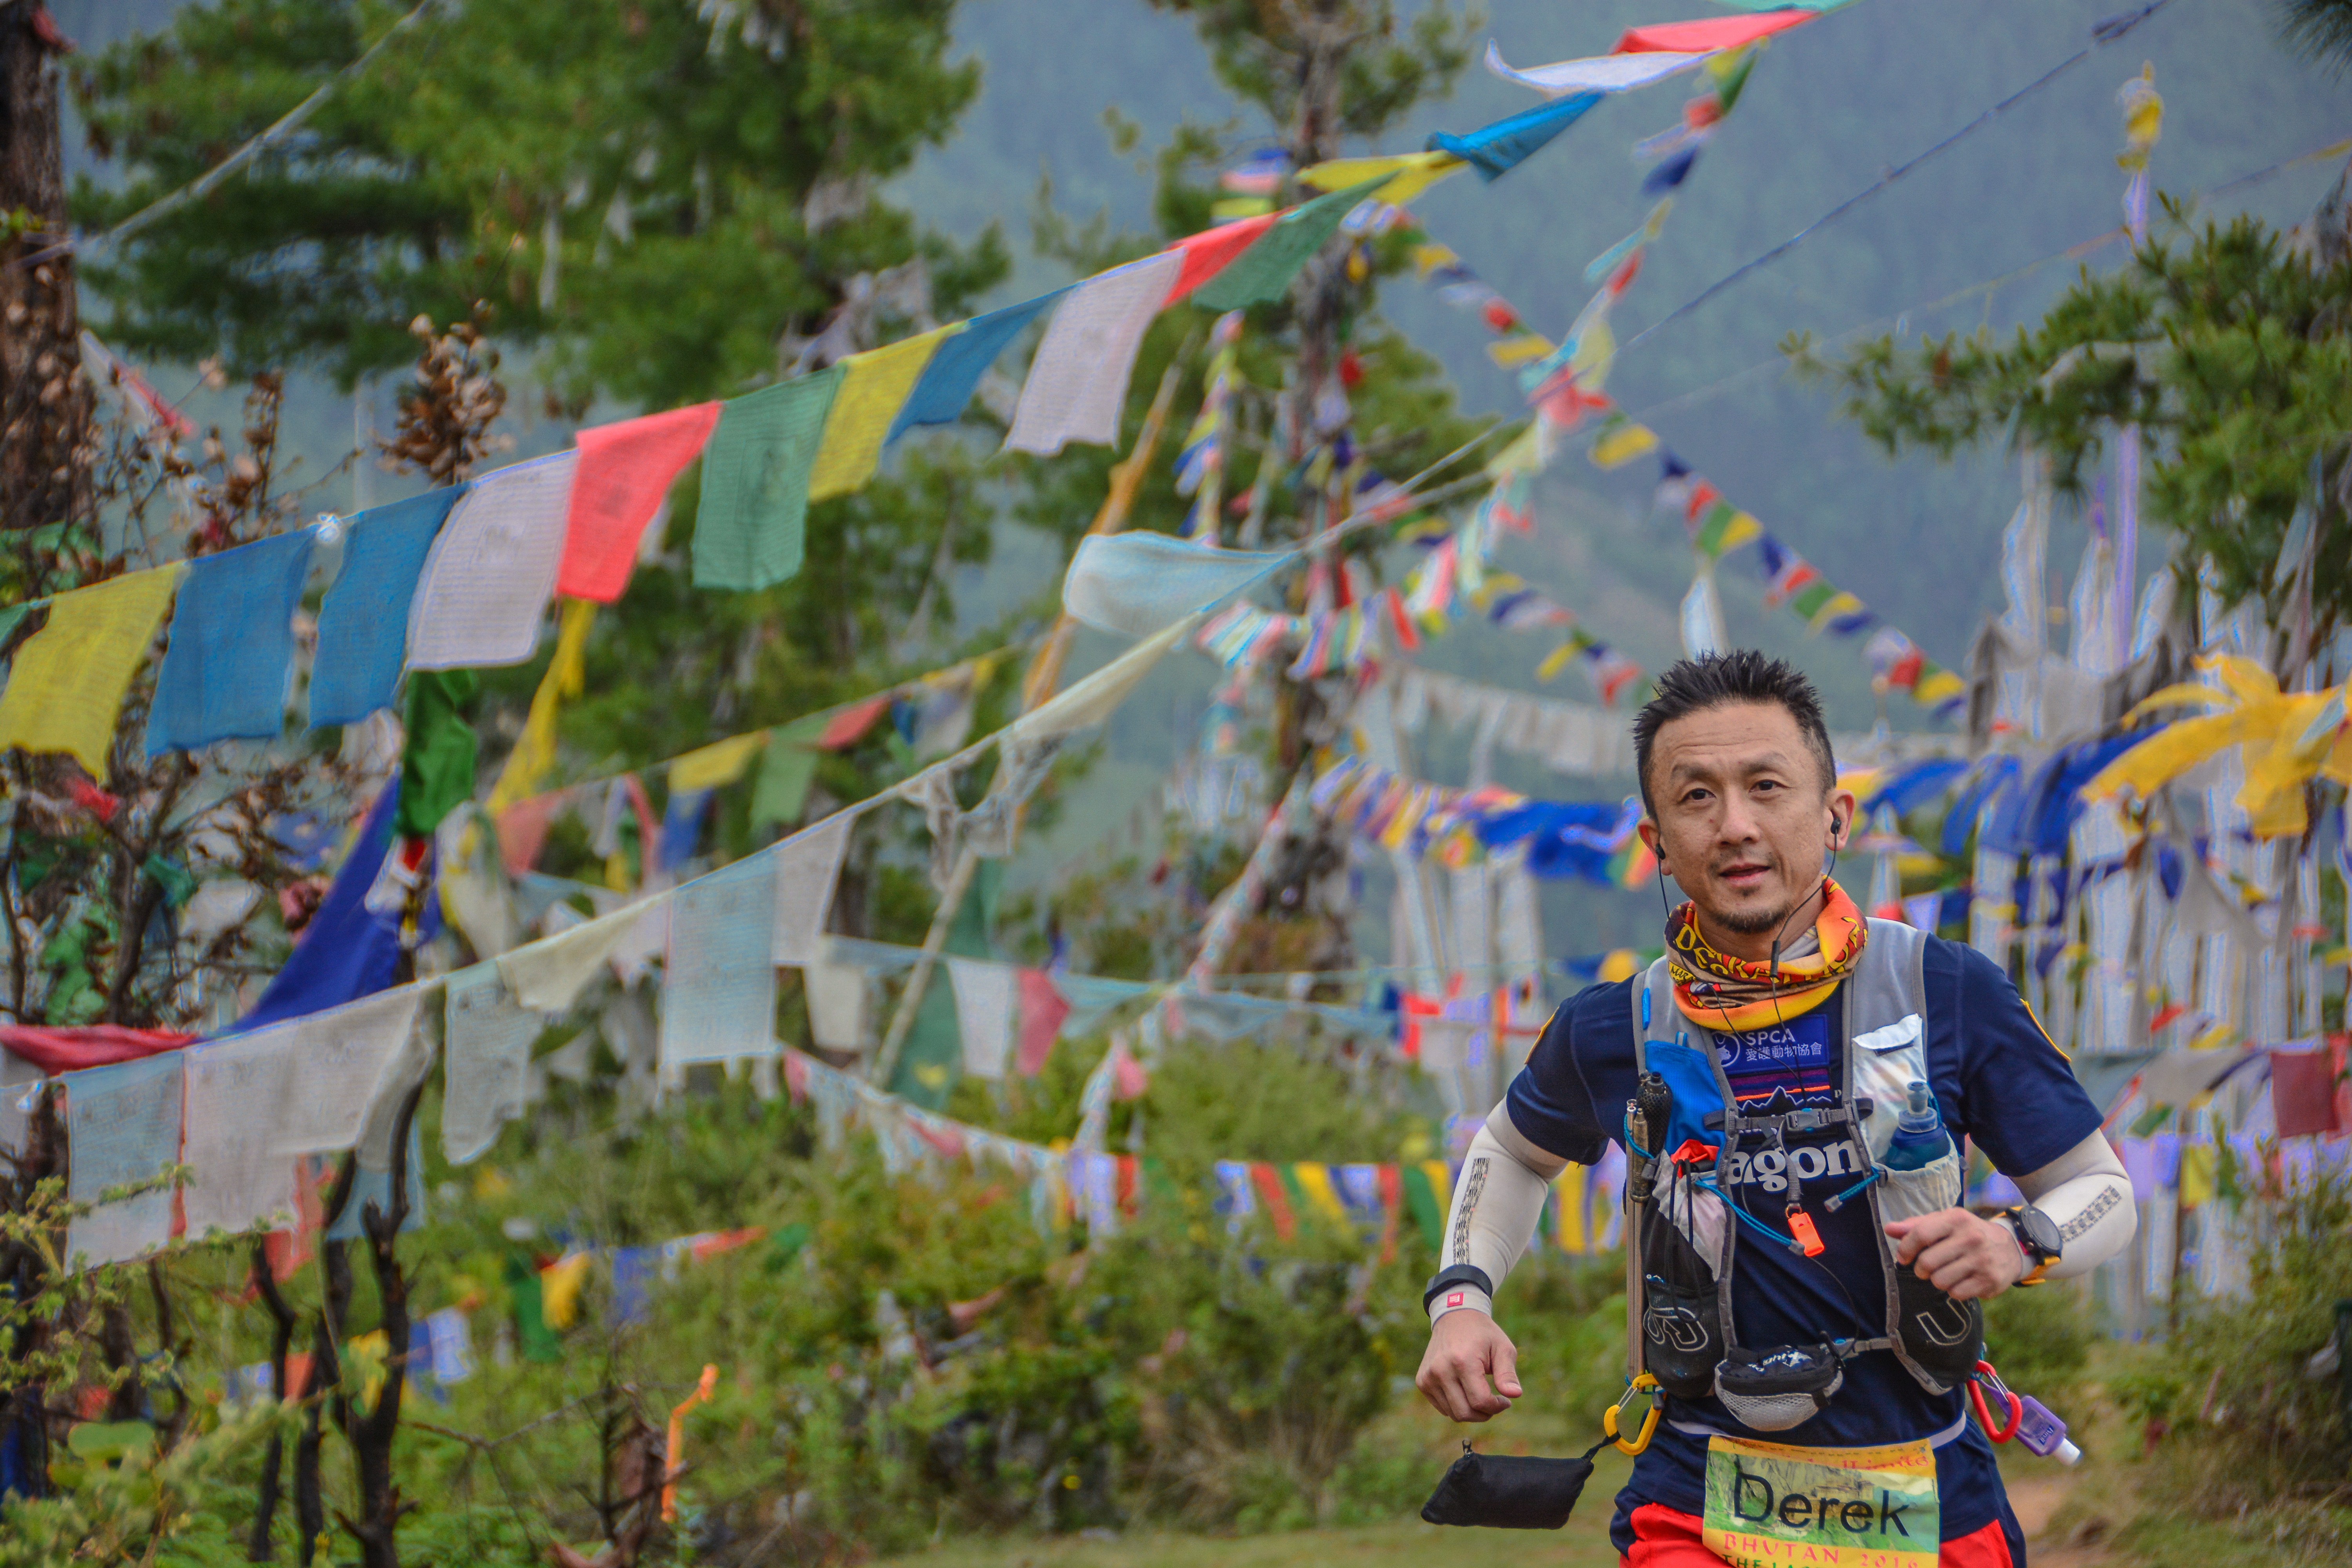 Hong Kong ultra runner Derek Kwik competes in an ultra-marathon in Bhutan last year.